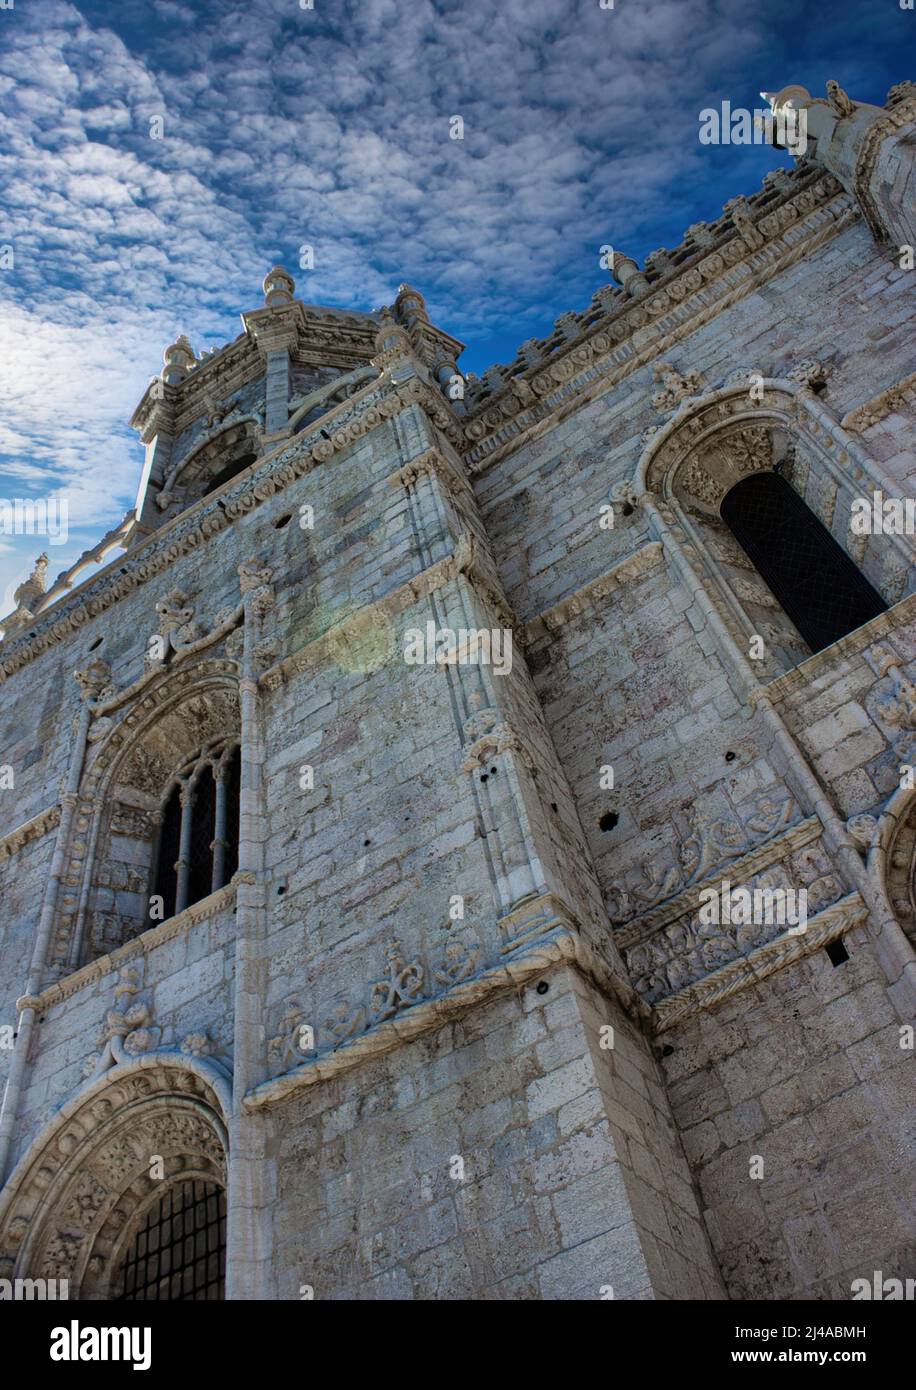 Das Kloster Jerónimos ist eines der prominentesten Beispiele der portugiesischen spätgotischen manuelinischen Architektur in Lissabon. UNESCO-Weltkulturerbe. Stockfoto